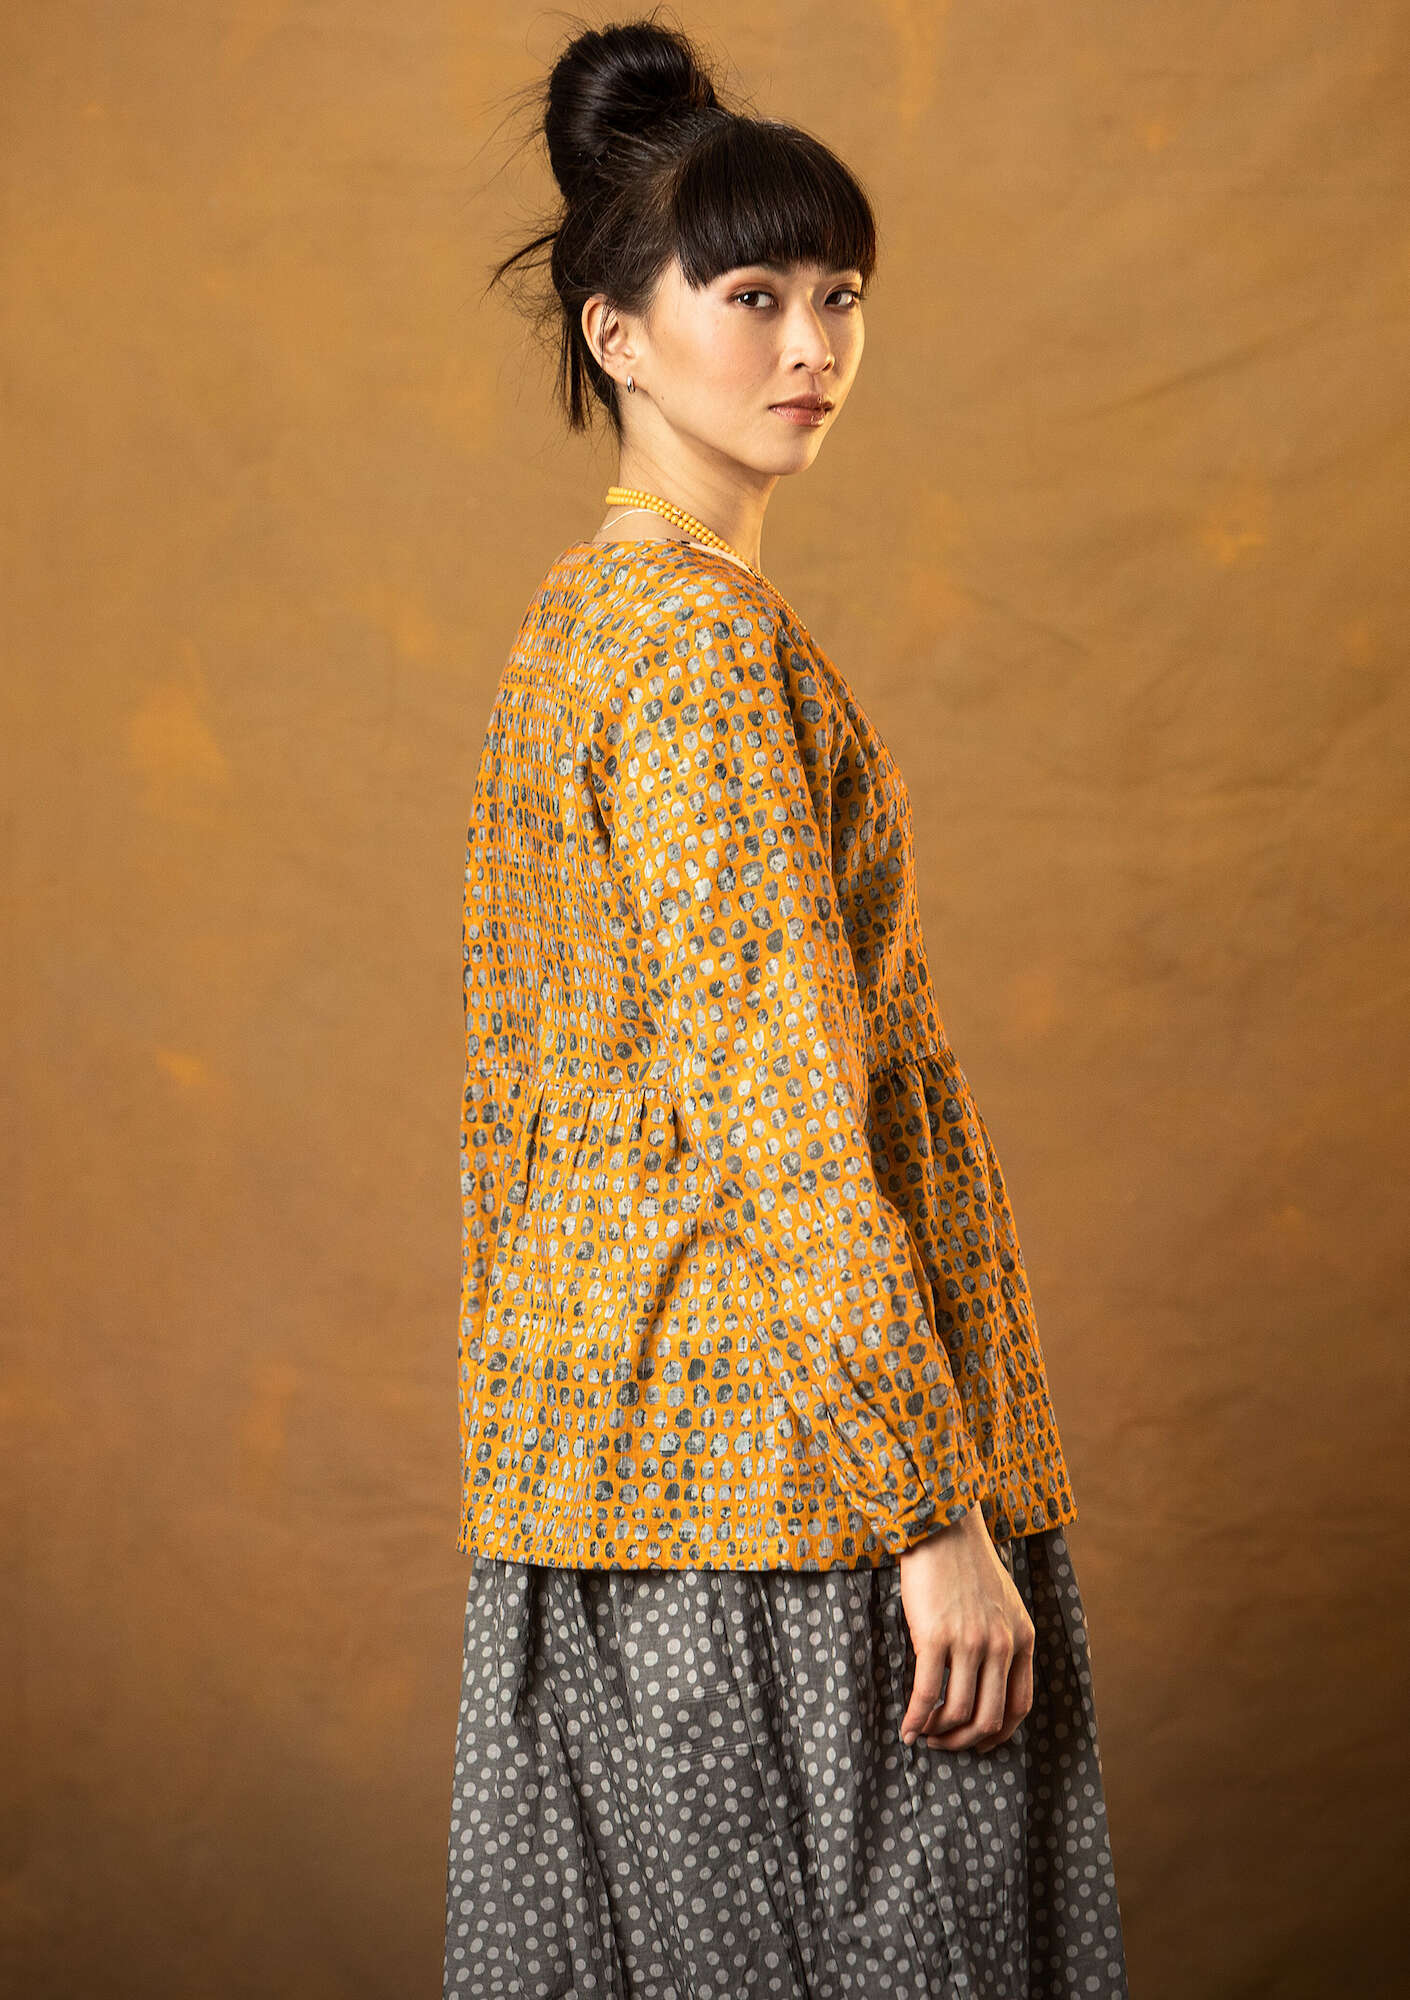 “Ottilia” artist’s blouse in organic cotton sun yellow